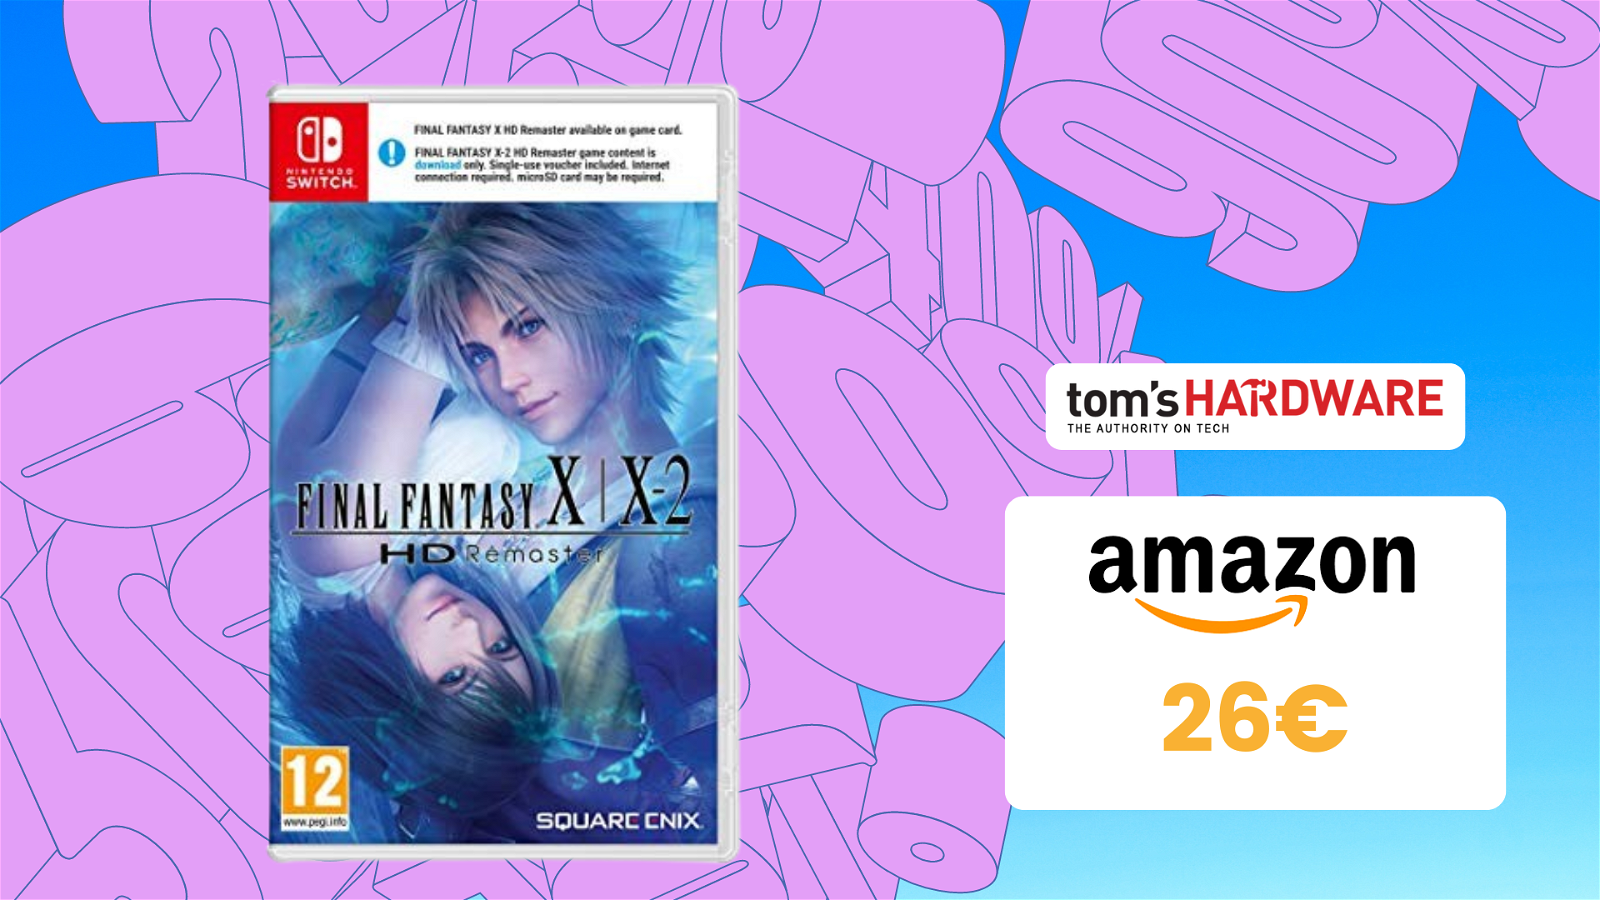 Immagine di Final Fantasy X/X-2 HD Remaster, in sconto su Amazon a soli 26€!